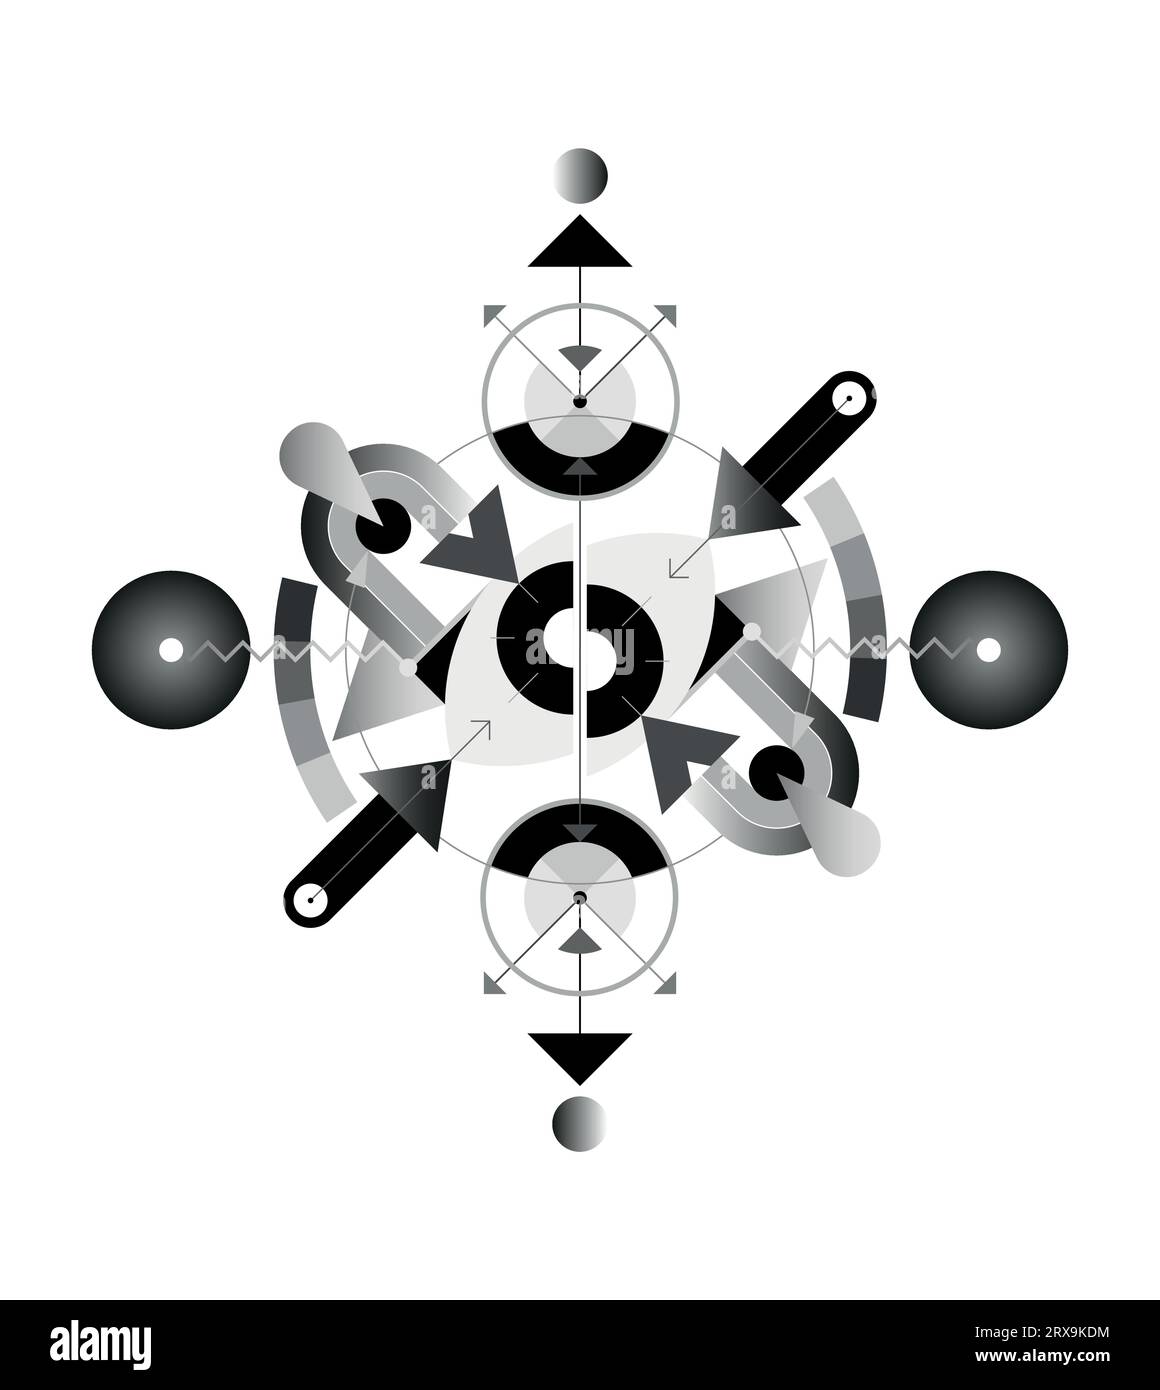 Il design astratto include un occhio diviso in due metà, forme geometriche, arrotondamenti e frecce. Immagine vettoriale in scala di grigi isolata su sfondo bianco. Illustrazione Vettoriale